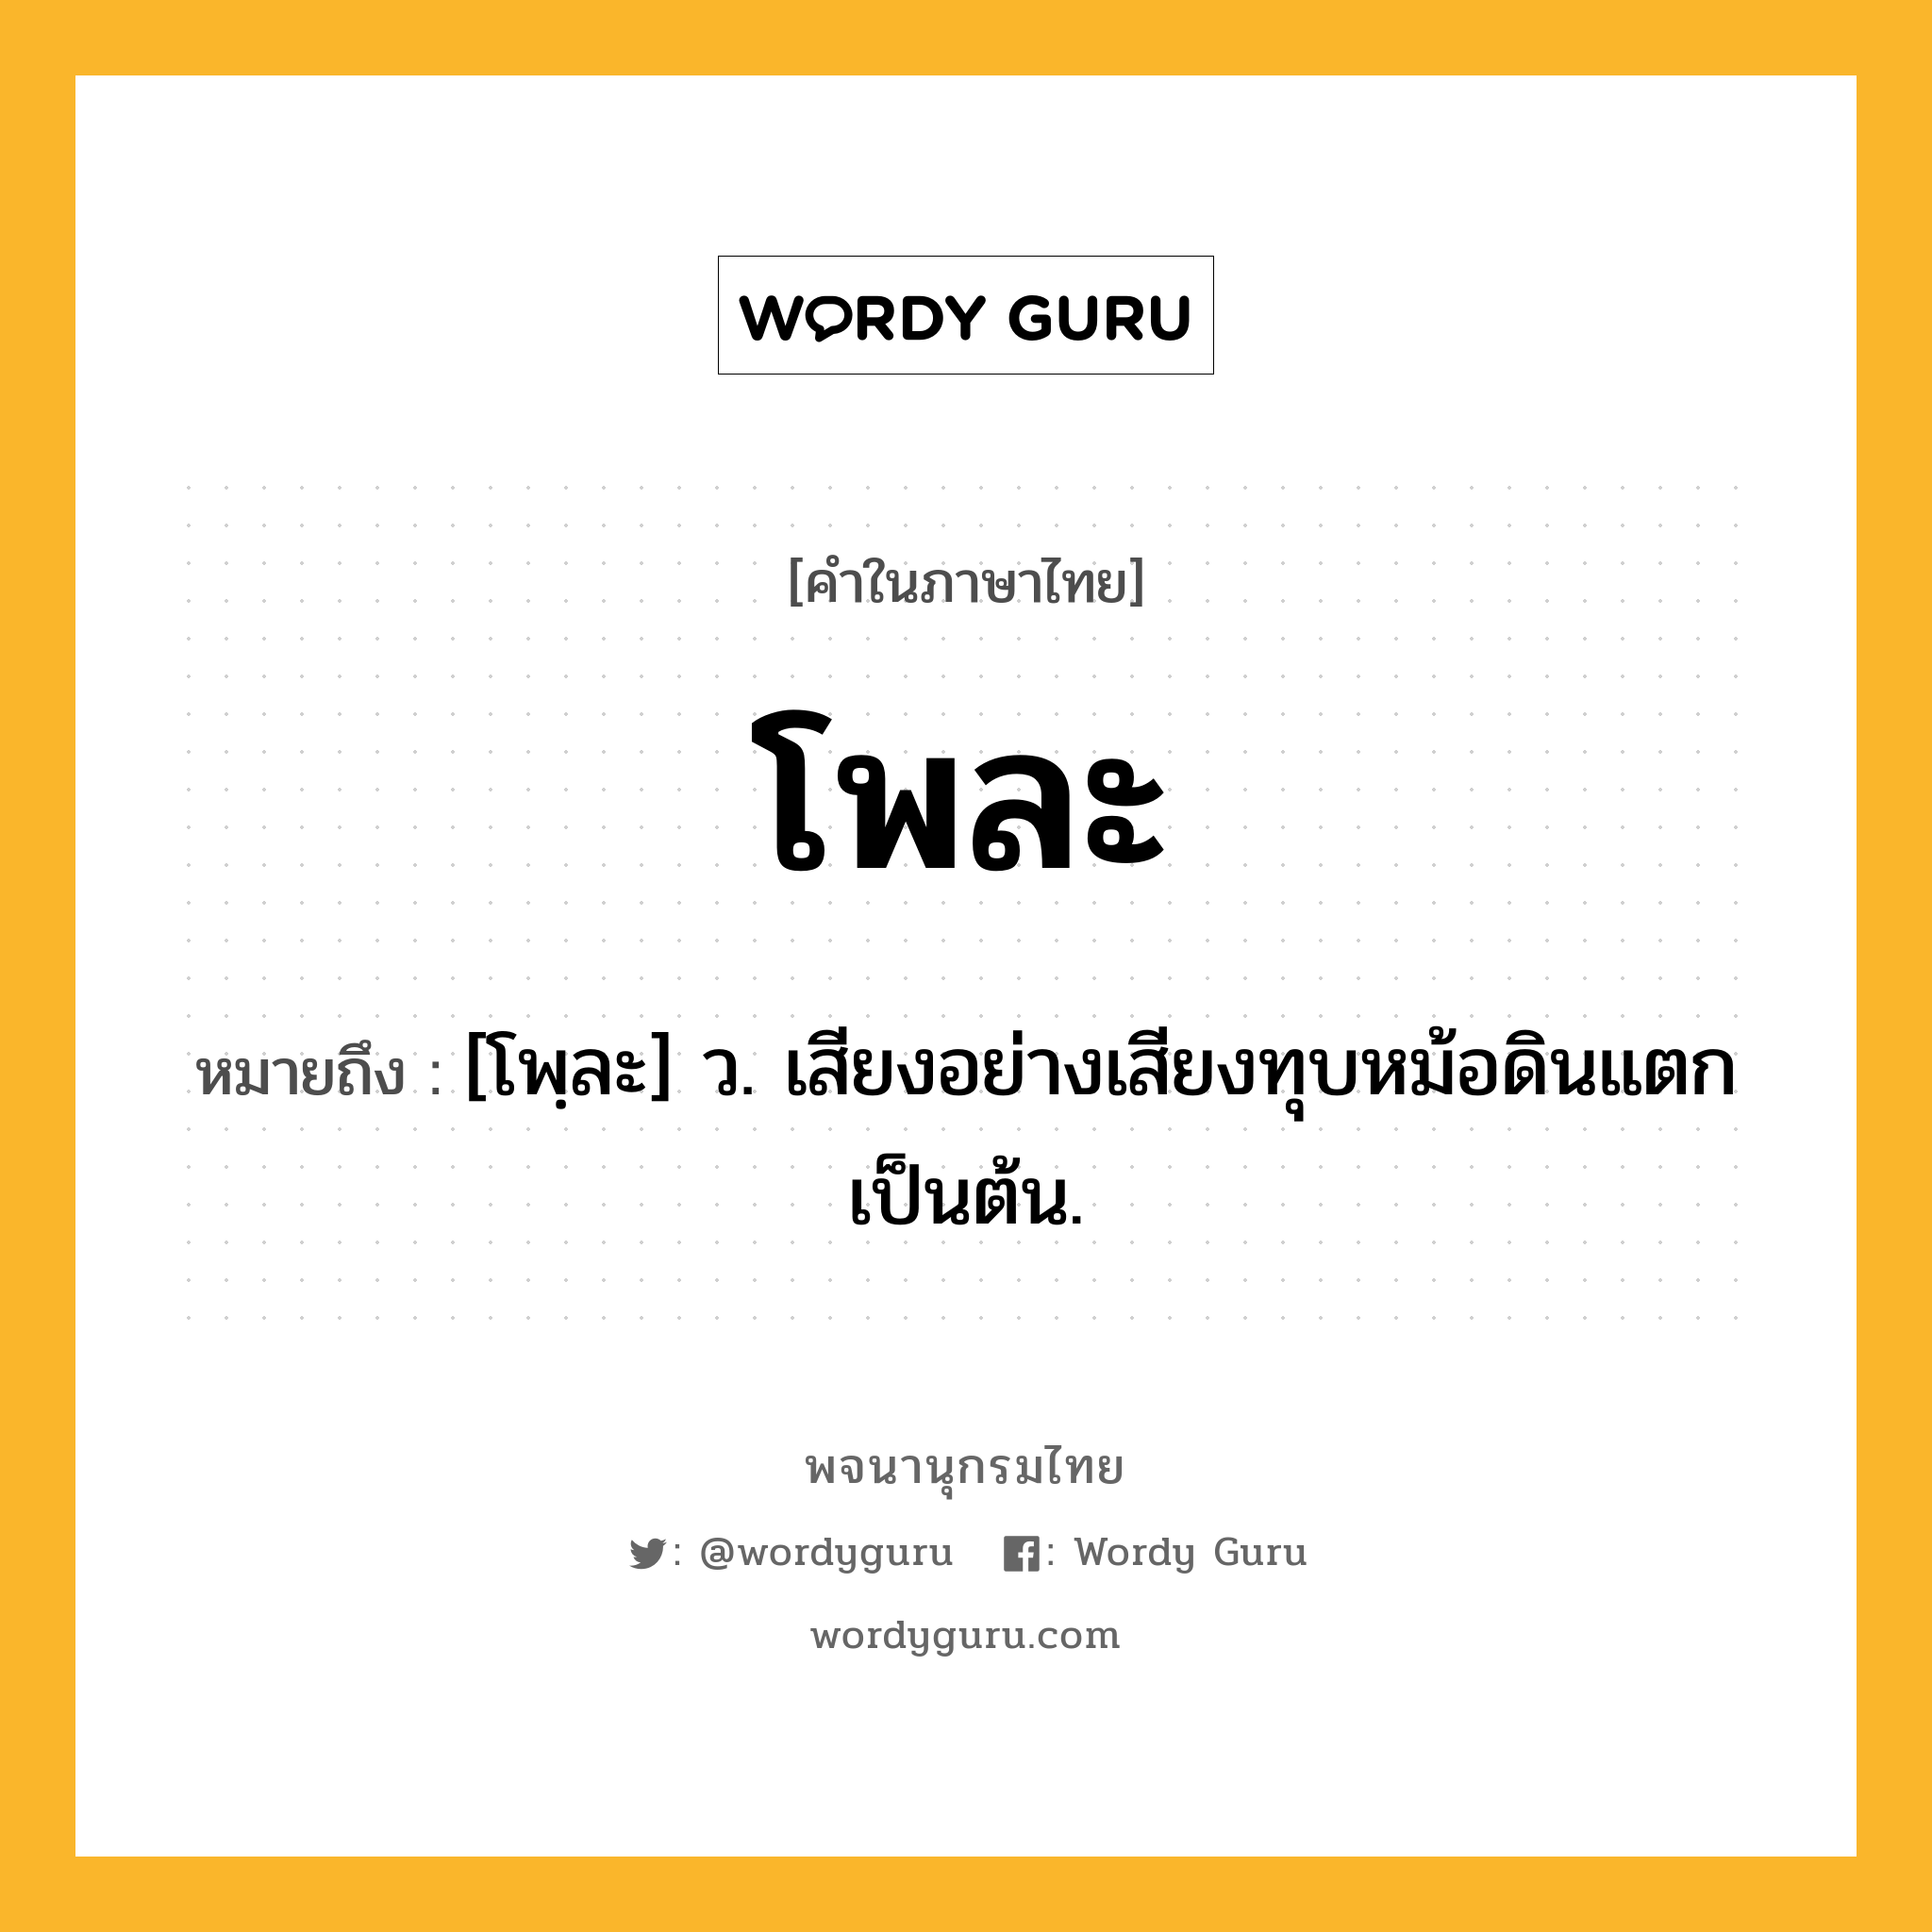 โพละ ความหมาย หมายถึงอะไร?, คำในภาษาไทย โพละ หมายถึง [โพฺละ] ว. เสียงอย่างเสียงทุบหม้อดินแตกเป็นต้น.